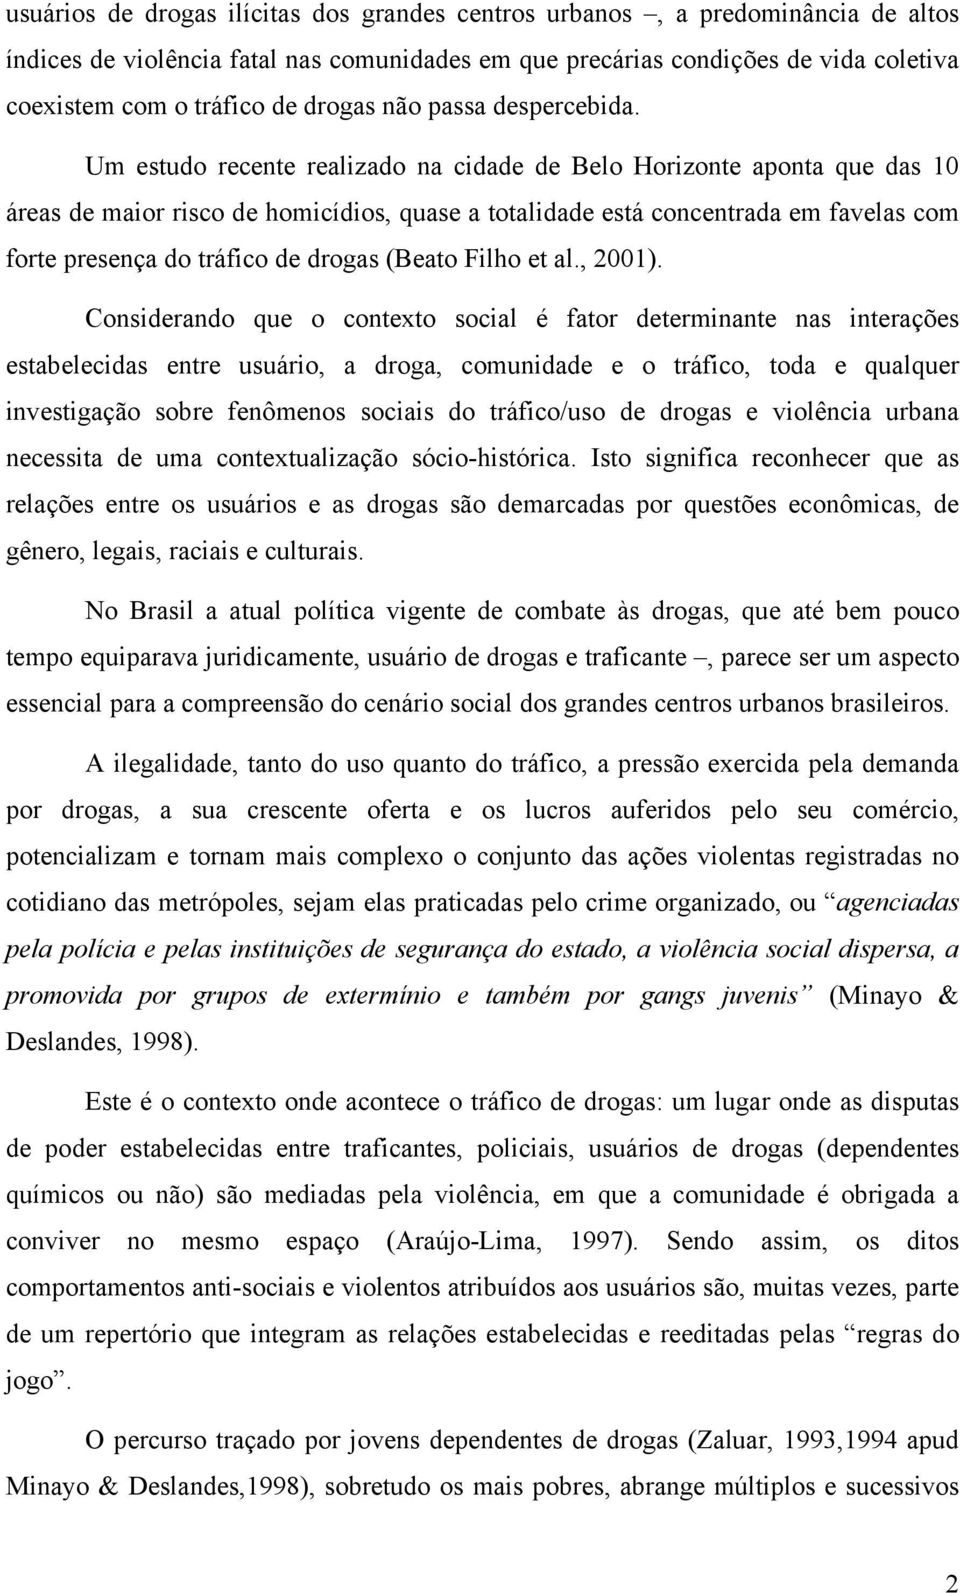 Um estudo recente realizado na cidade de Belo Horizonte aponta que das 10 áreas de maior risco de homicídios, quase a totalidade está concentrada em favelas com forte presença do tráfico de drogas